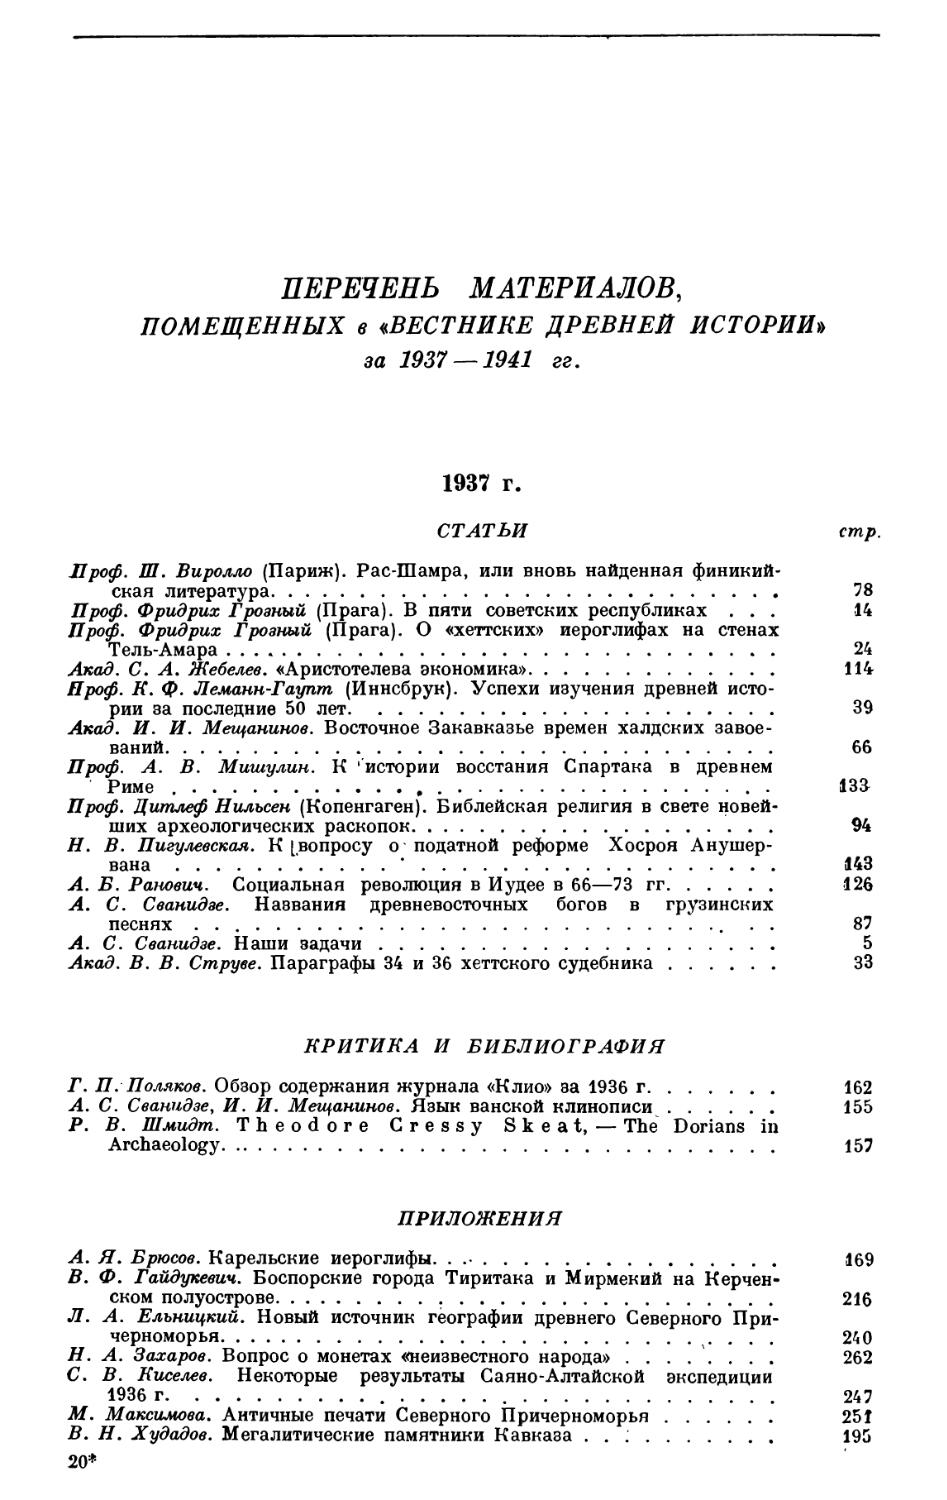 Перечень материалов, помещенных в «ВДИ» за 1937—1941 гг